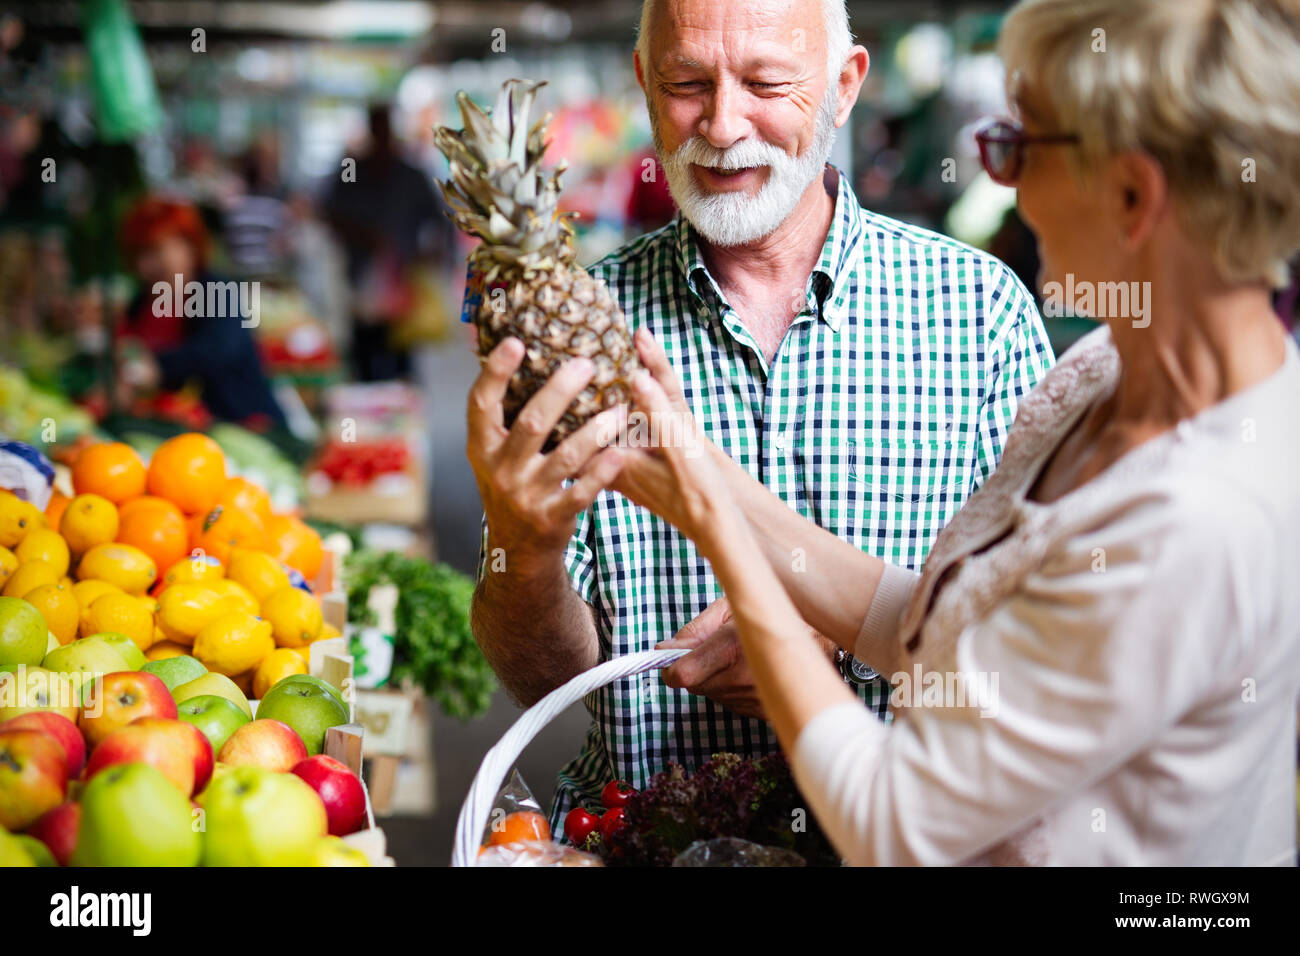 Compras, comida, la venta, el consumismo y la gente concepto - feliz pareja senior comprar alimentos frescos Foto de stock